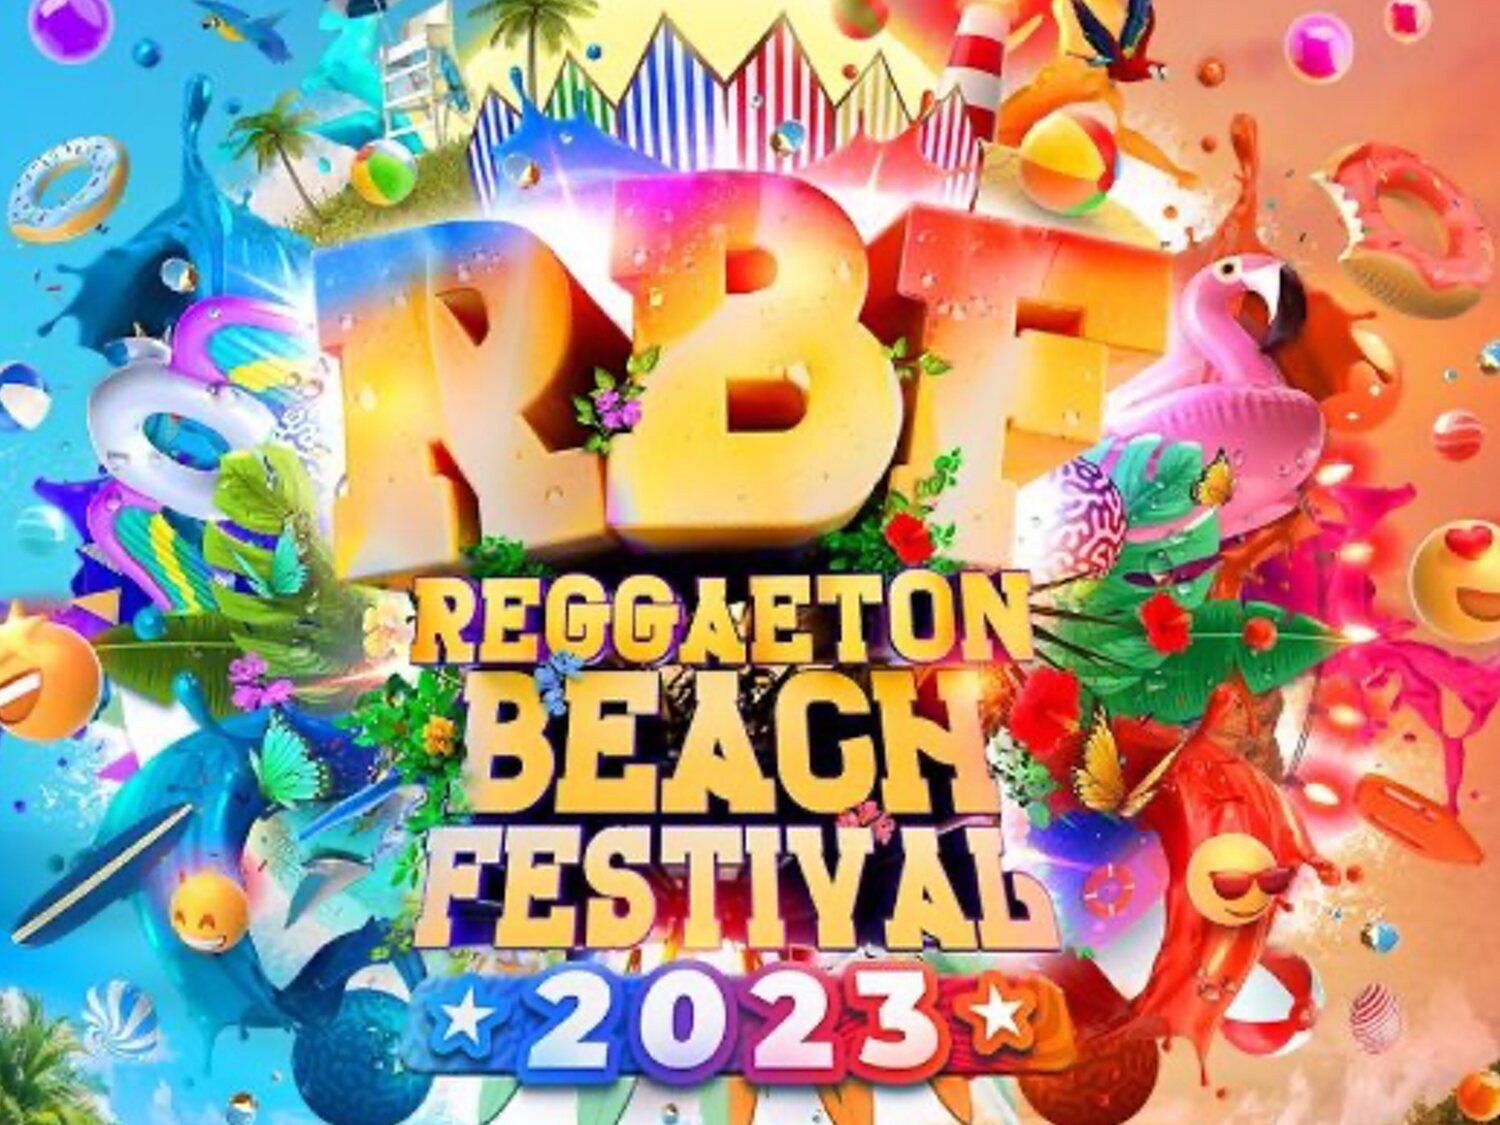 El Reggaeton Beach Festival es cancelado por "motivos de seguridad" a tres días del evento